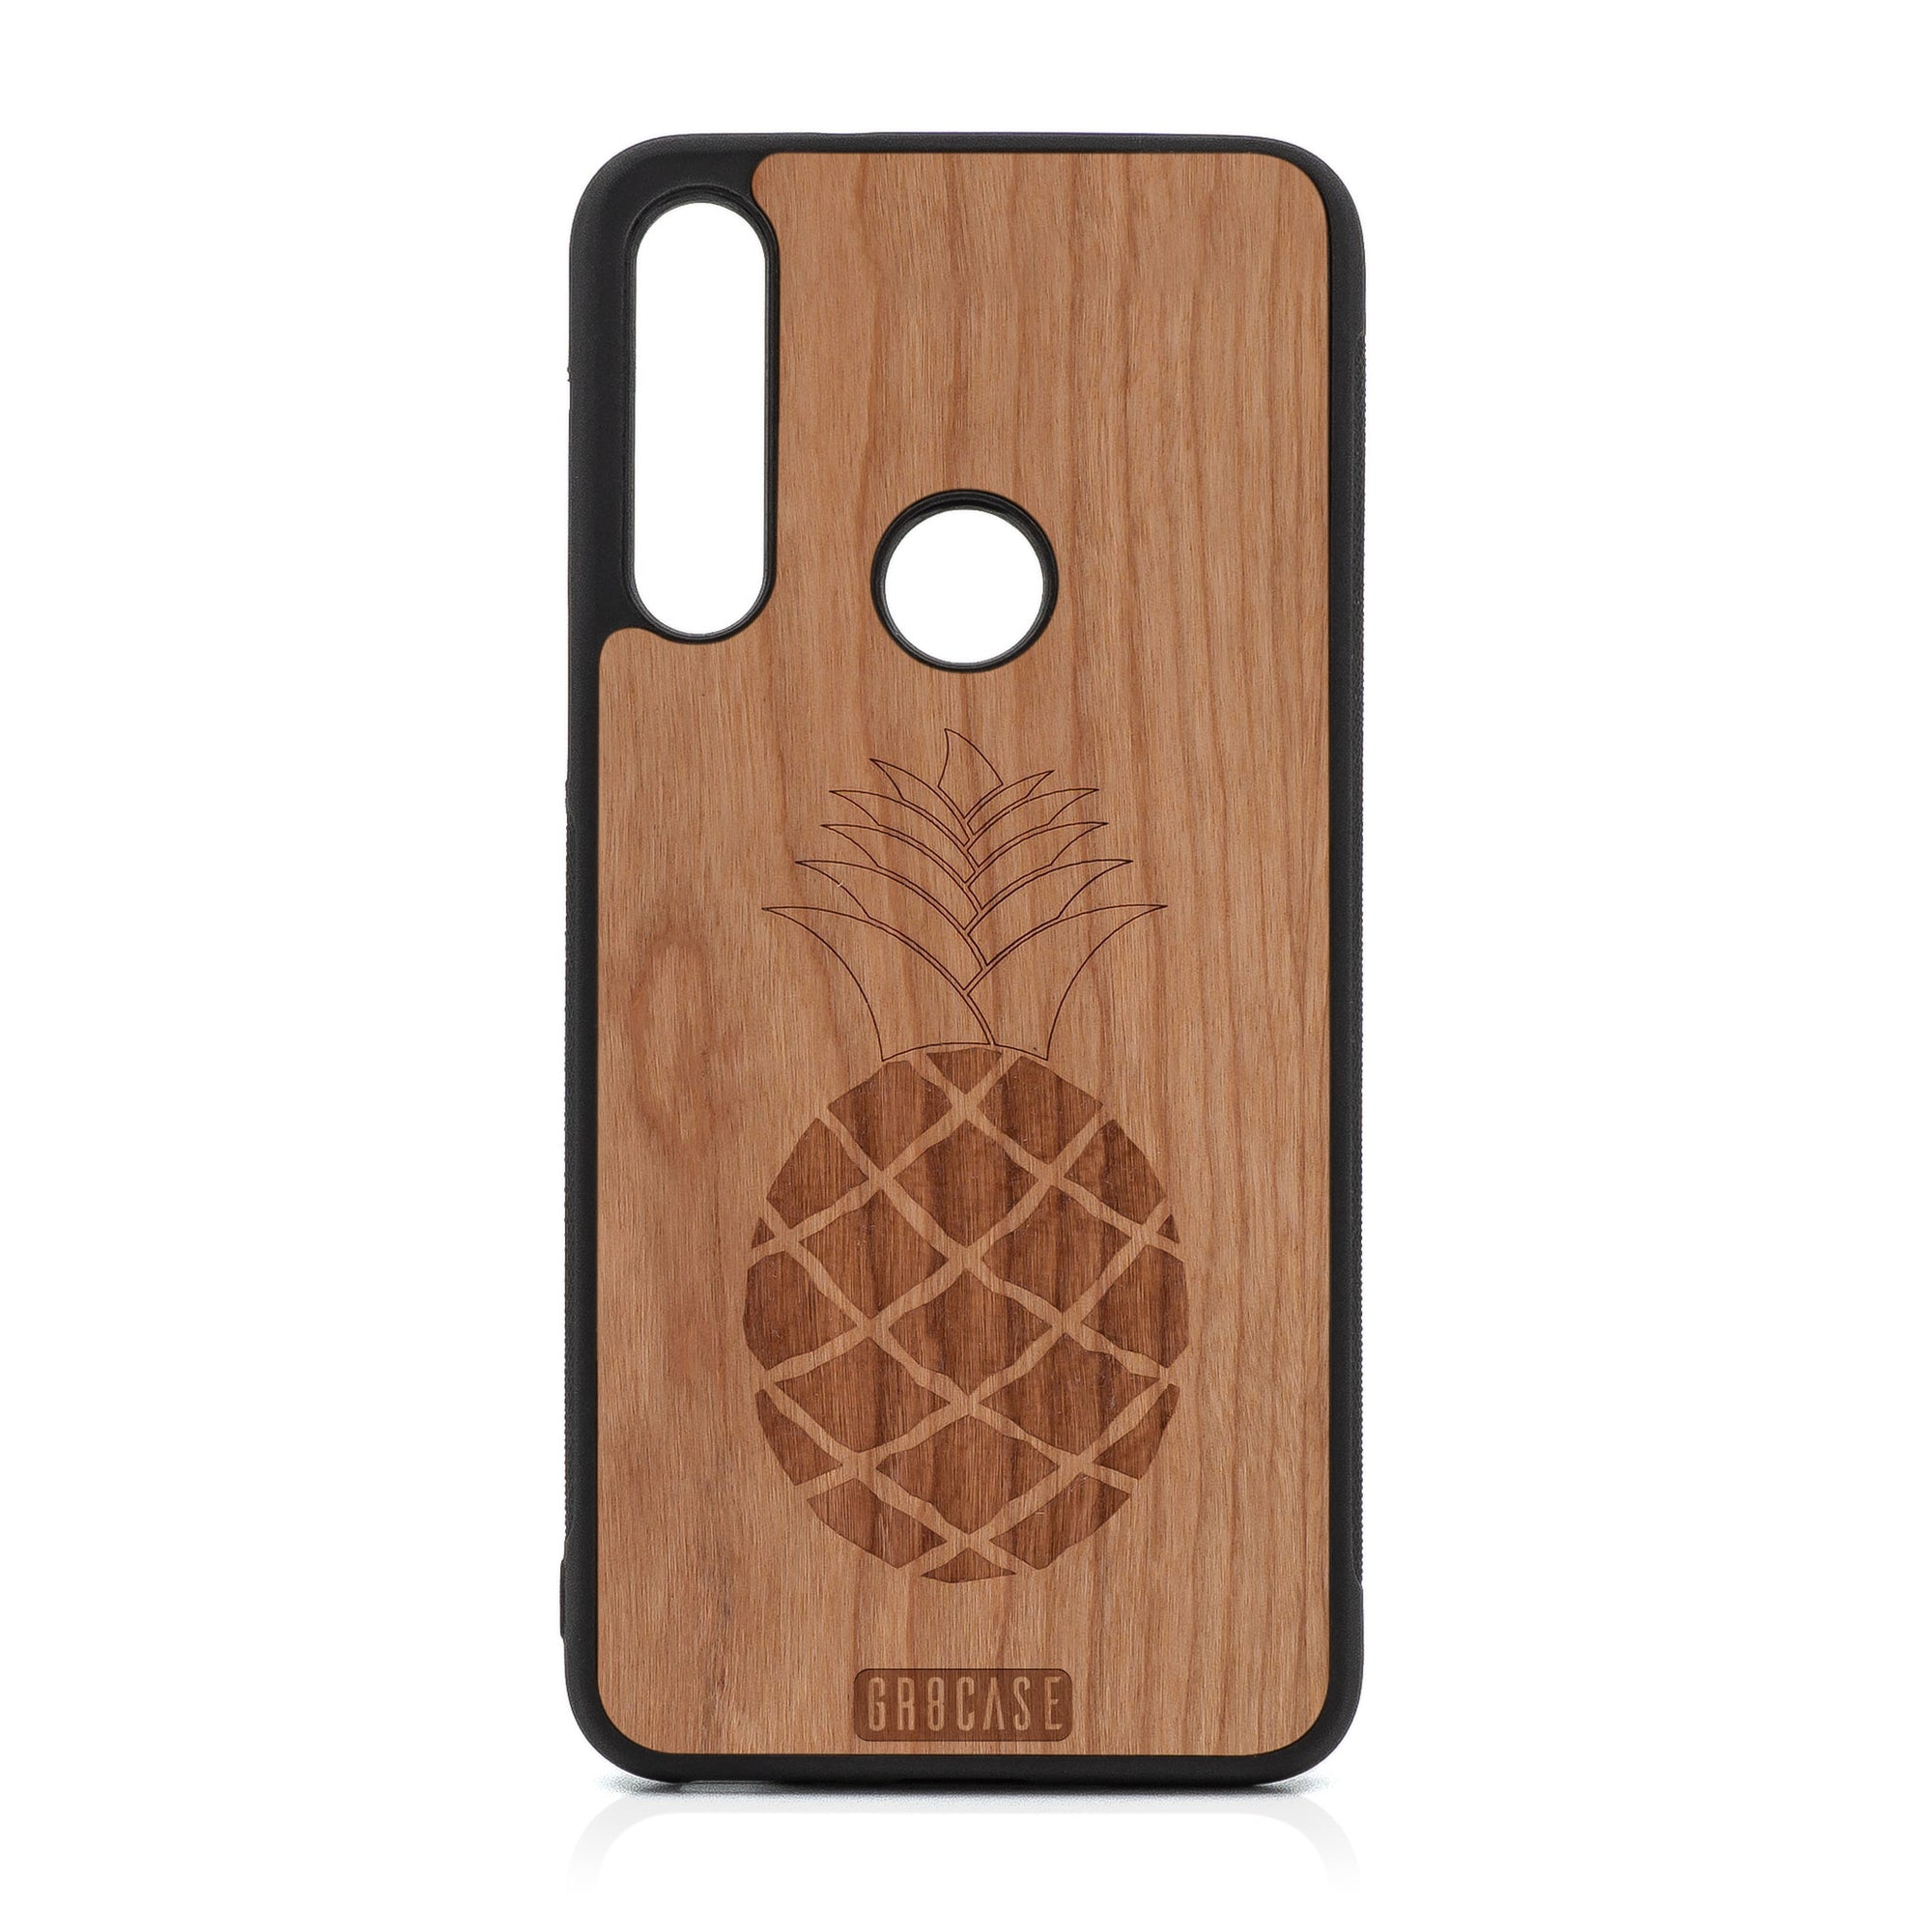 Pineapple Design Wood Case For Moto G Fast